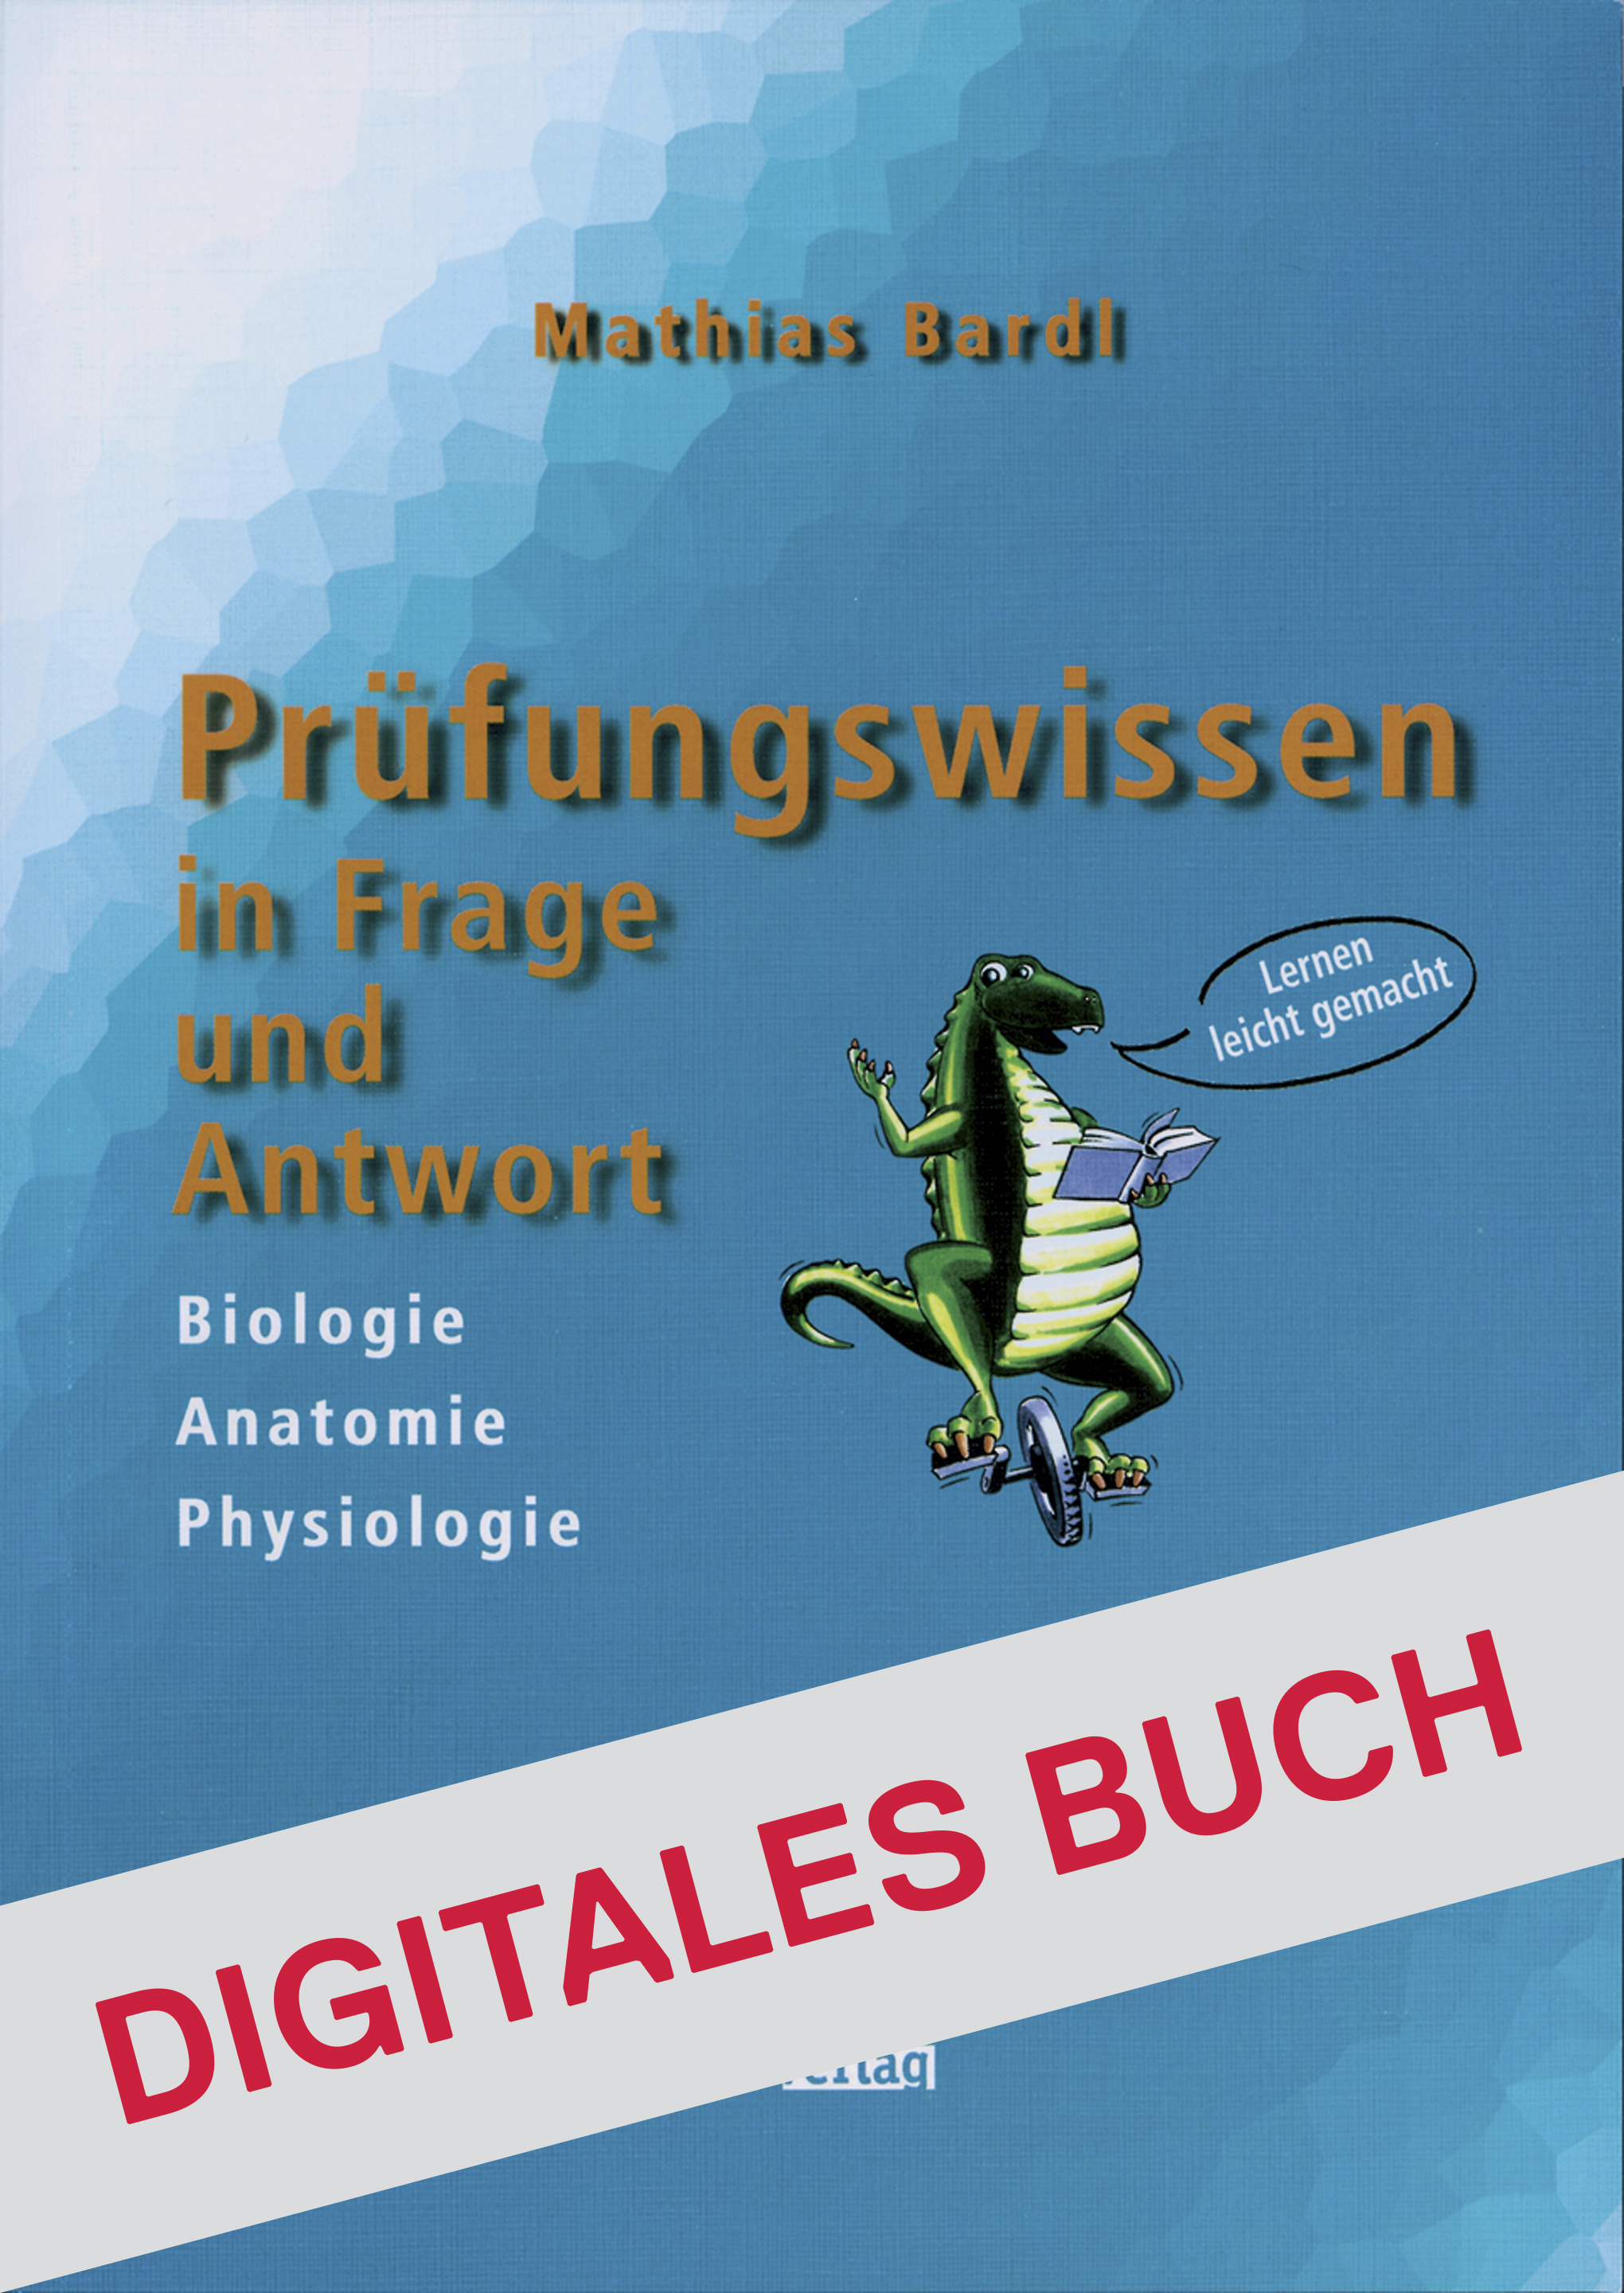 Prüfungswissen Biologie, Anatomie, Physiologie - Digitales Buch